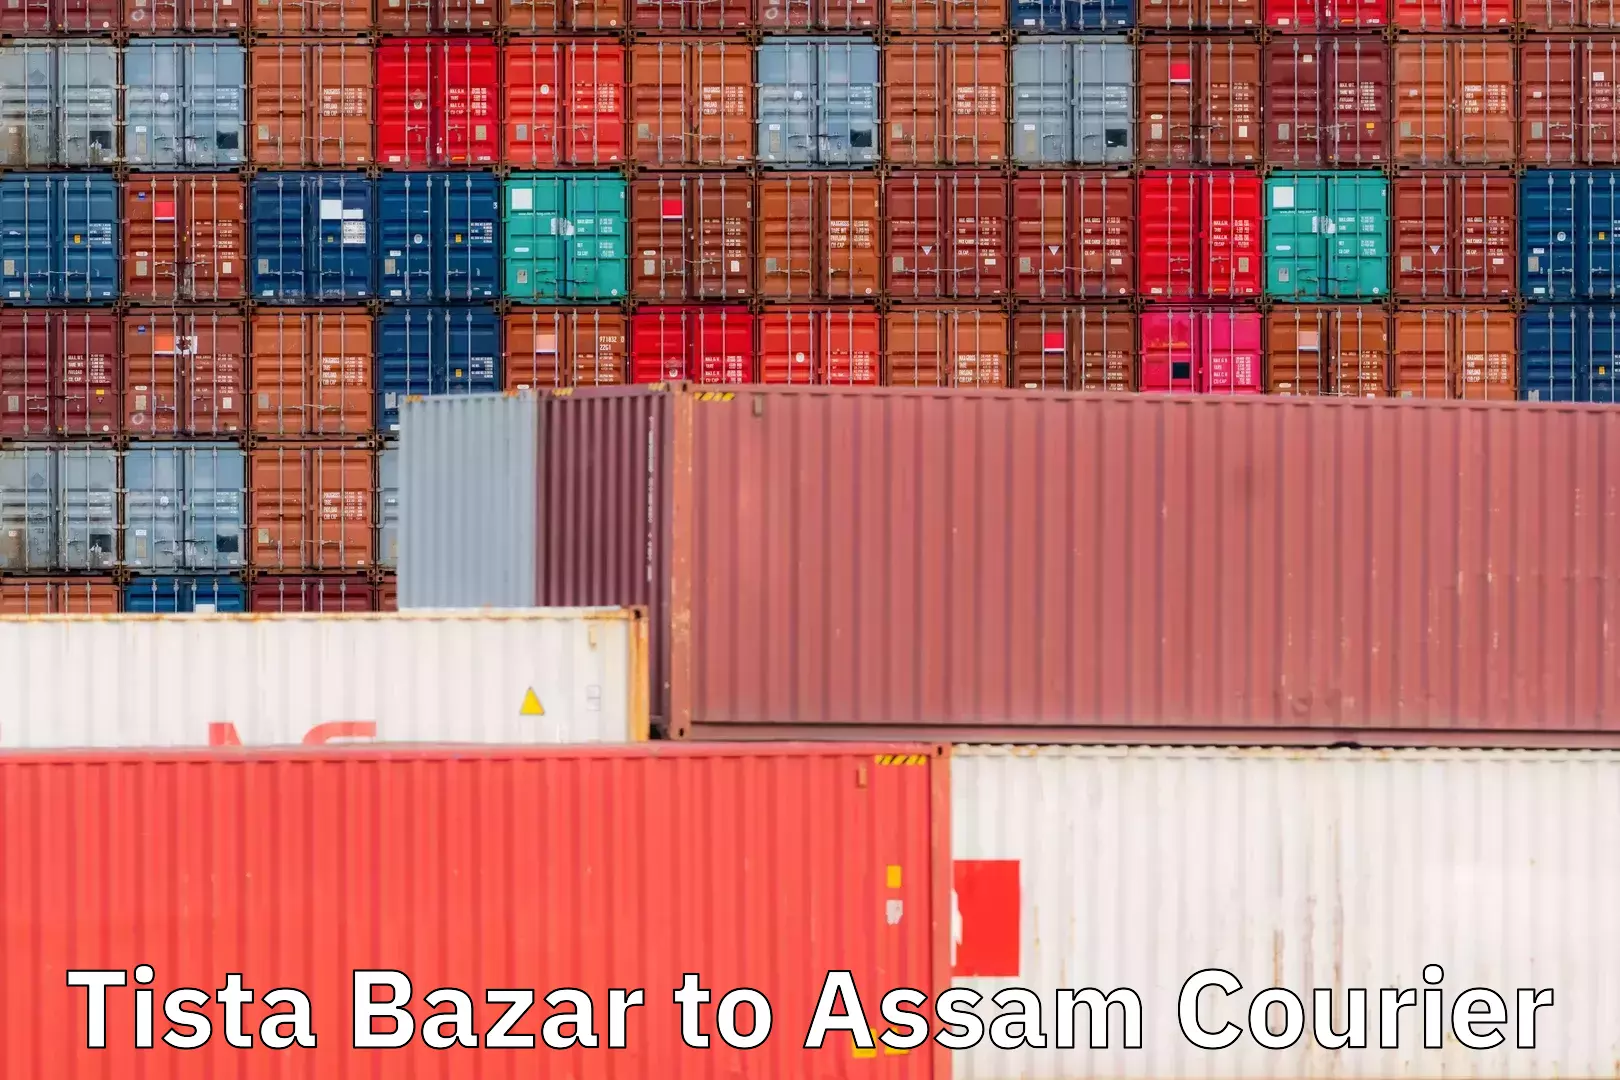 Courier service efficiency Tista Bazar to Assam